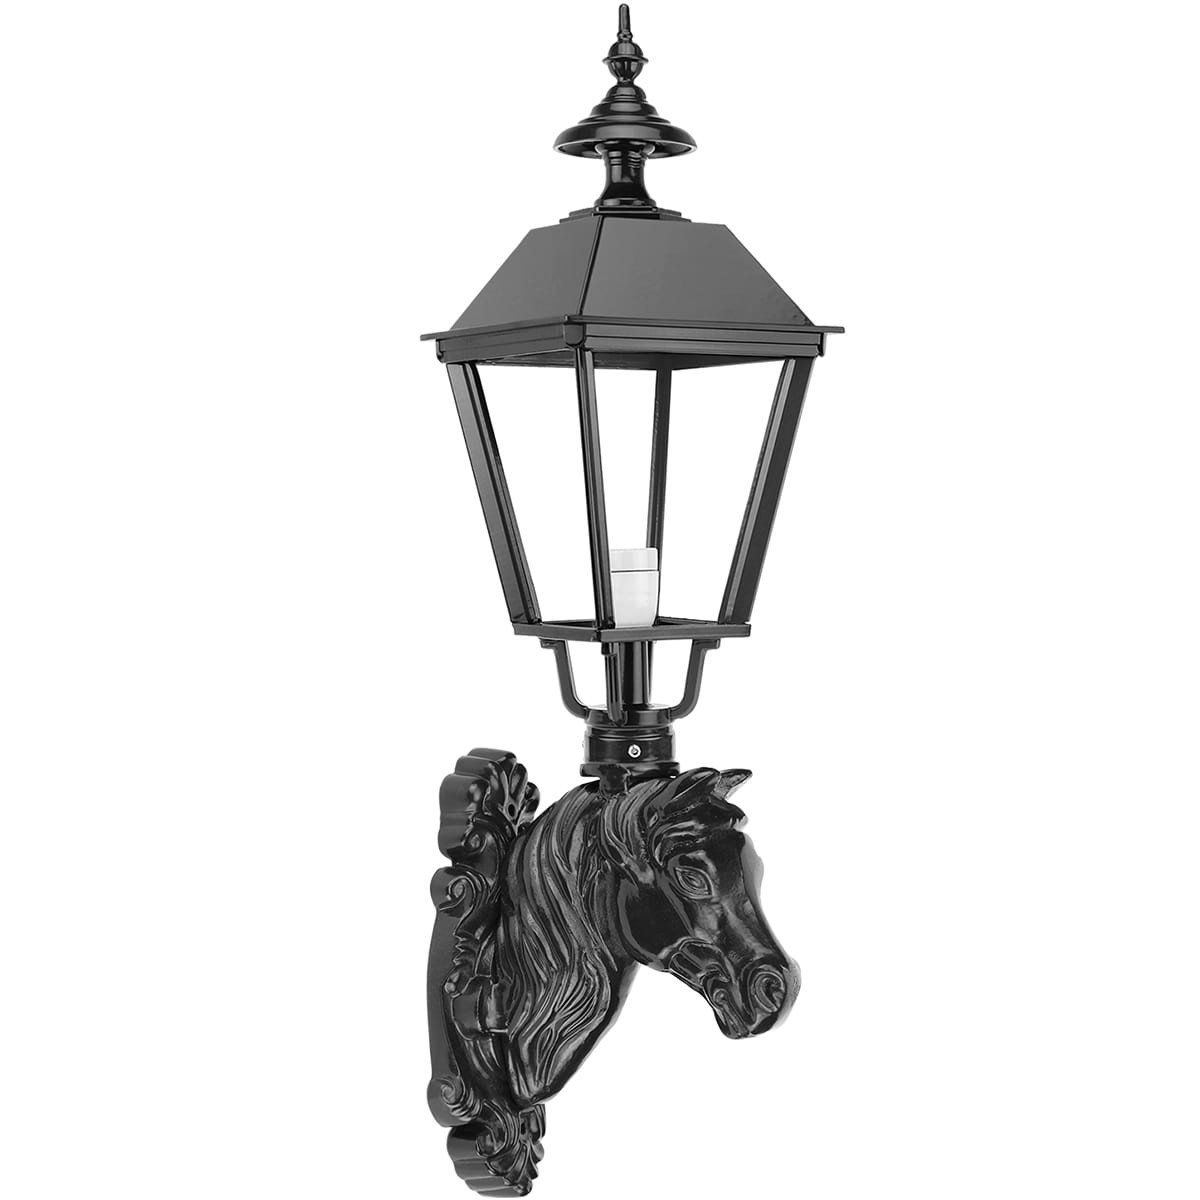 Buitenverlichting Klassiek Landelijk Muurlamp Almkerk paard ornament - 84 cm